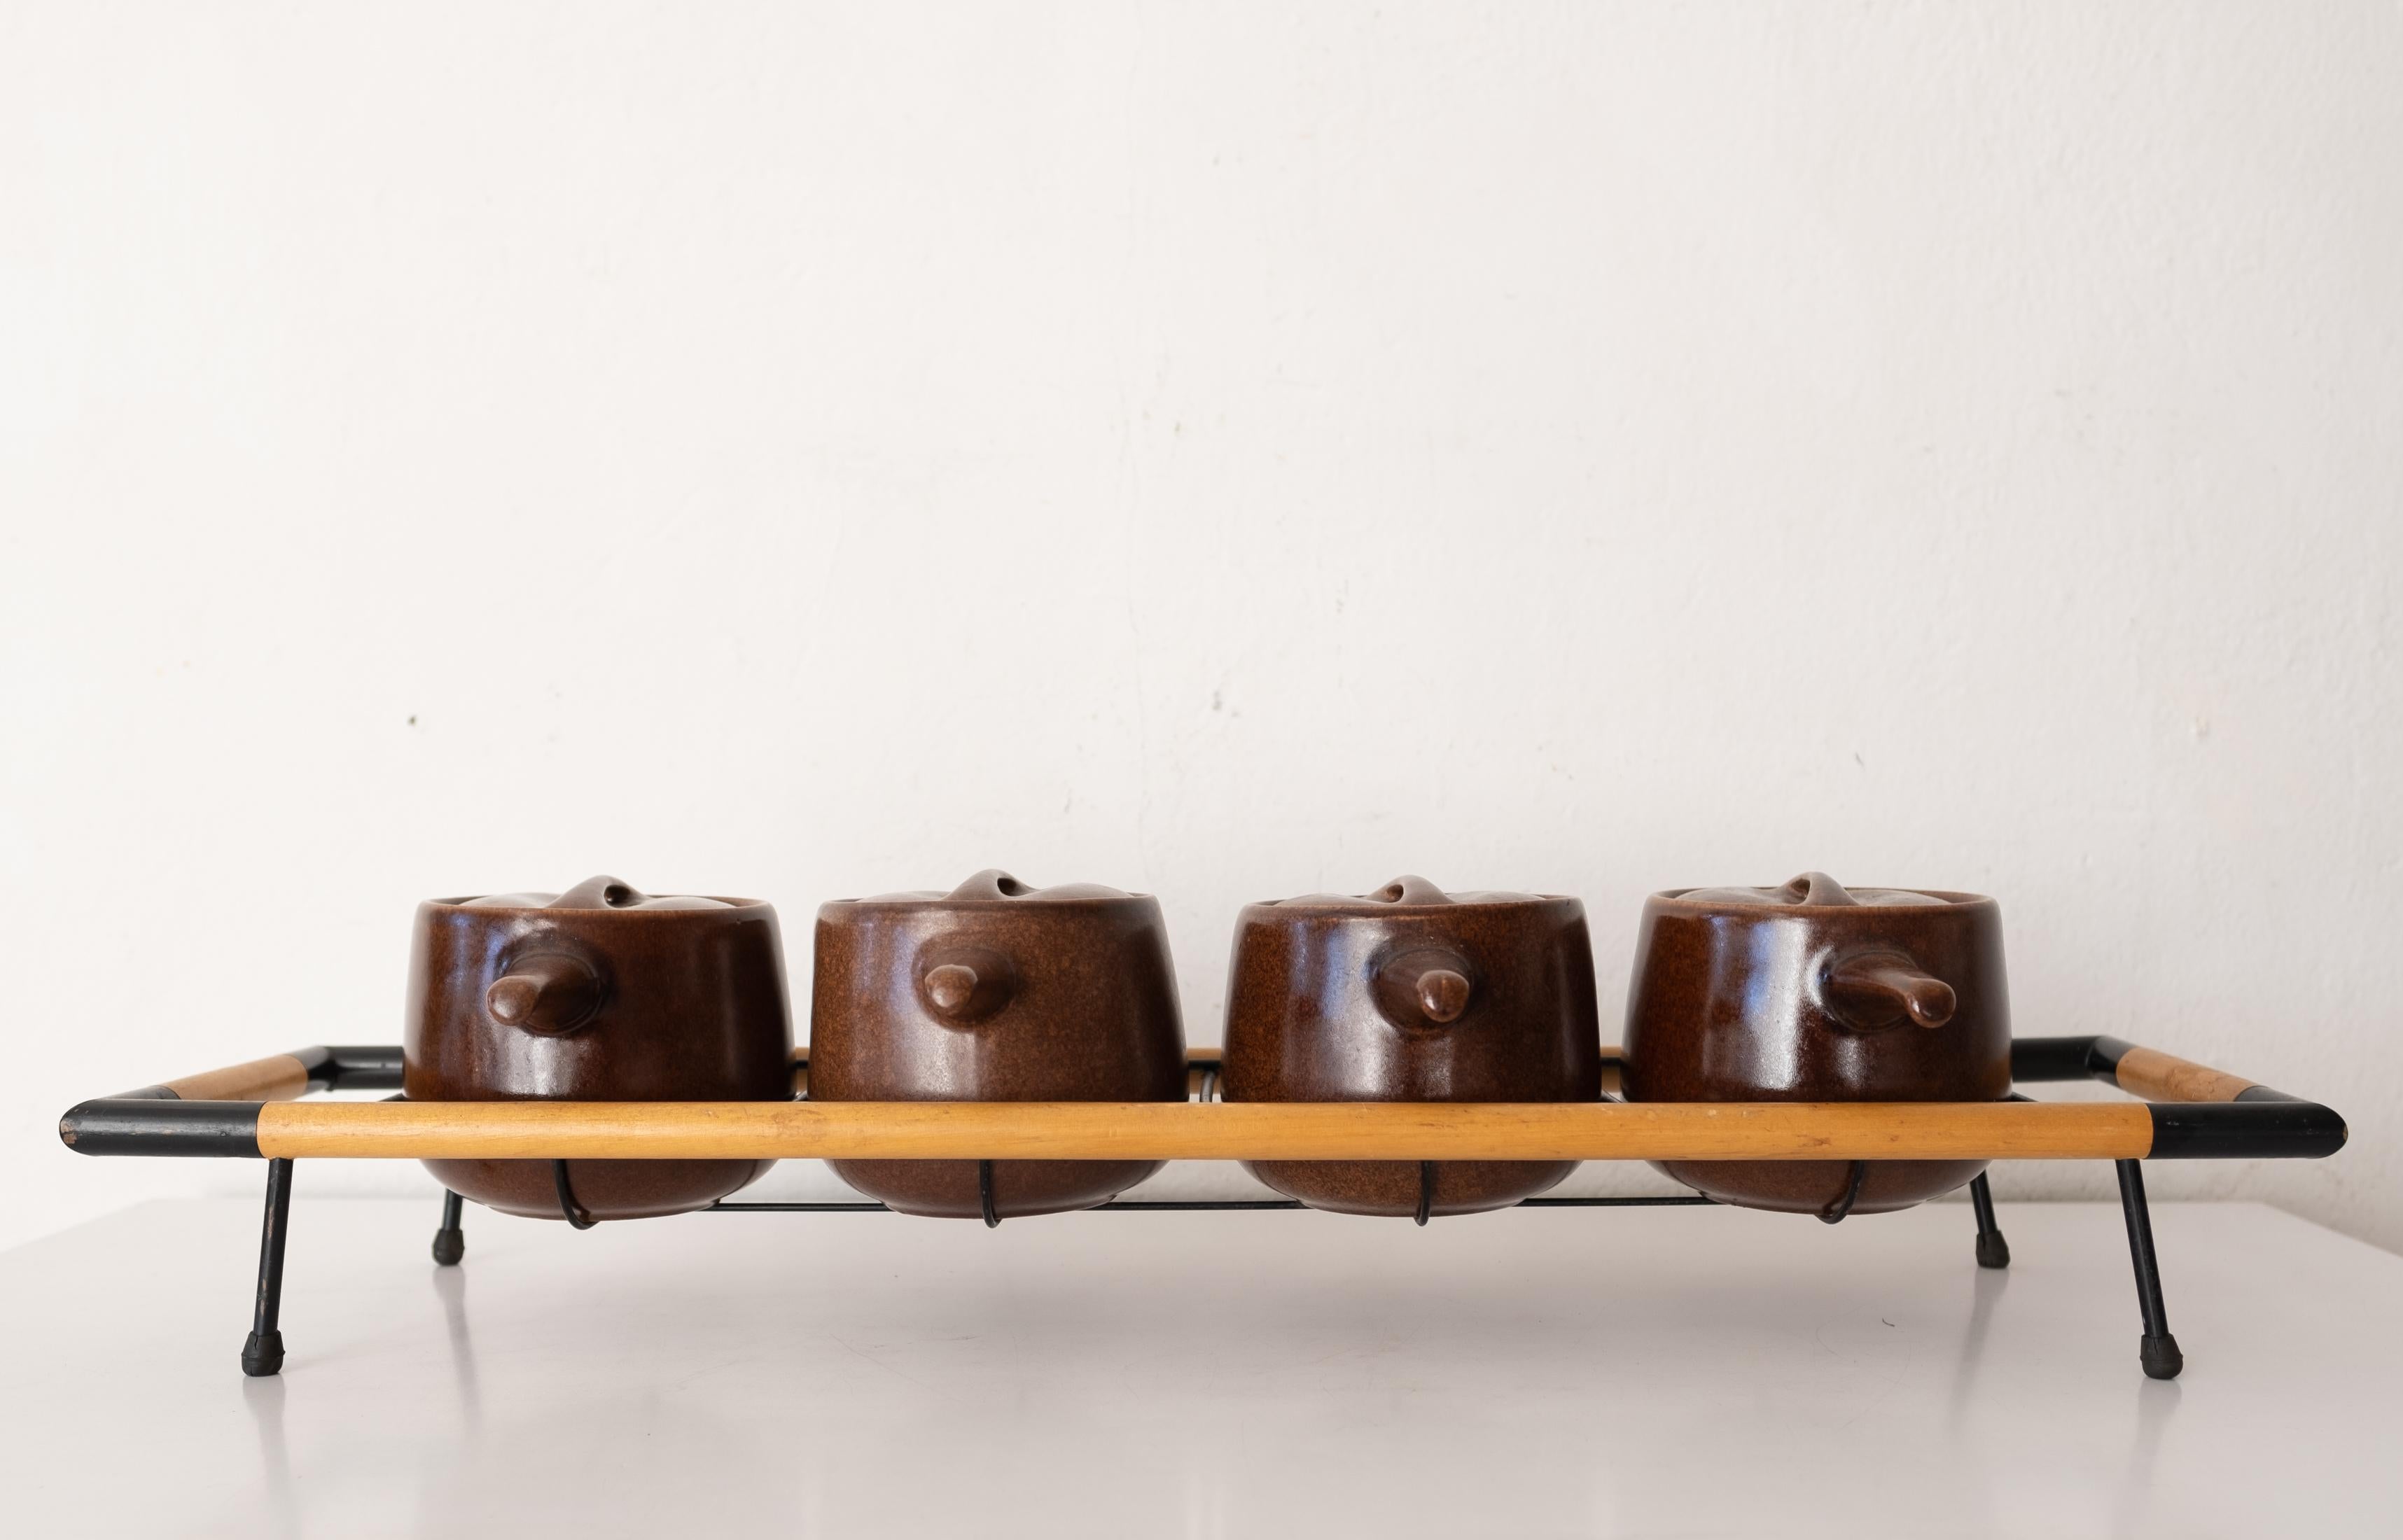 Raymor by Roseville Bohnentöpfe auf originalem Eisen- und Holzständer.  Entworfen von Ben Seibel für die Roseville Pottery Company und vertrieben von Raymor unter der Linie Modern Stoneware. Dies ist ein sehr schwer zu findender Satz. USA, 1950er